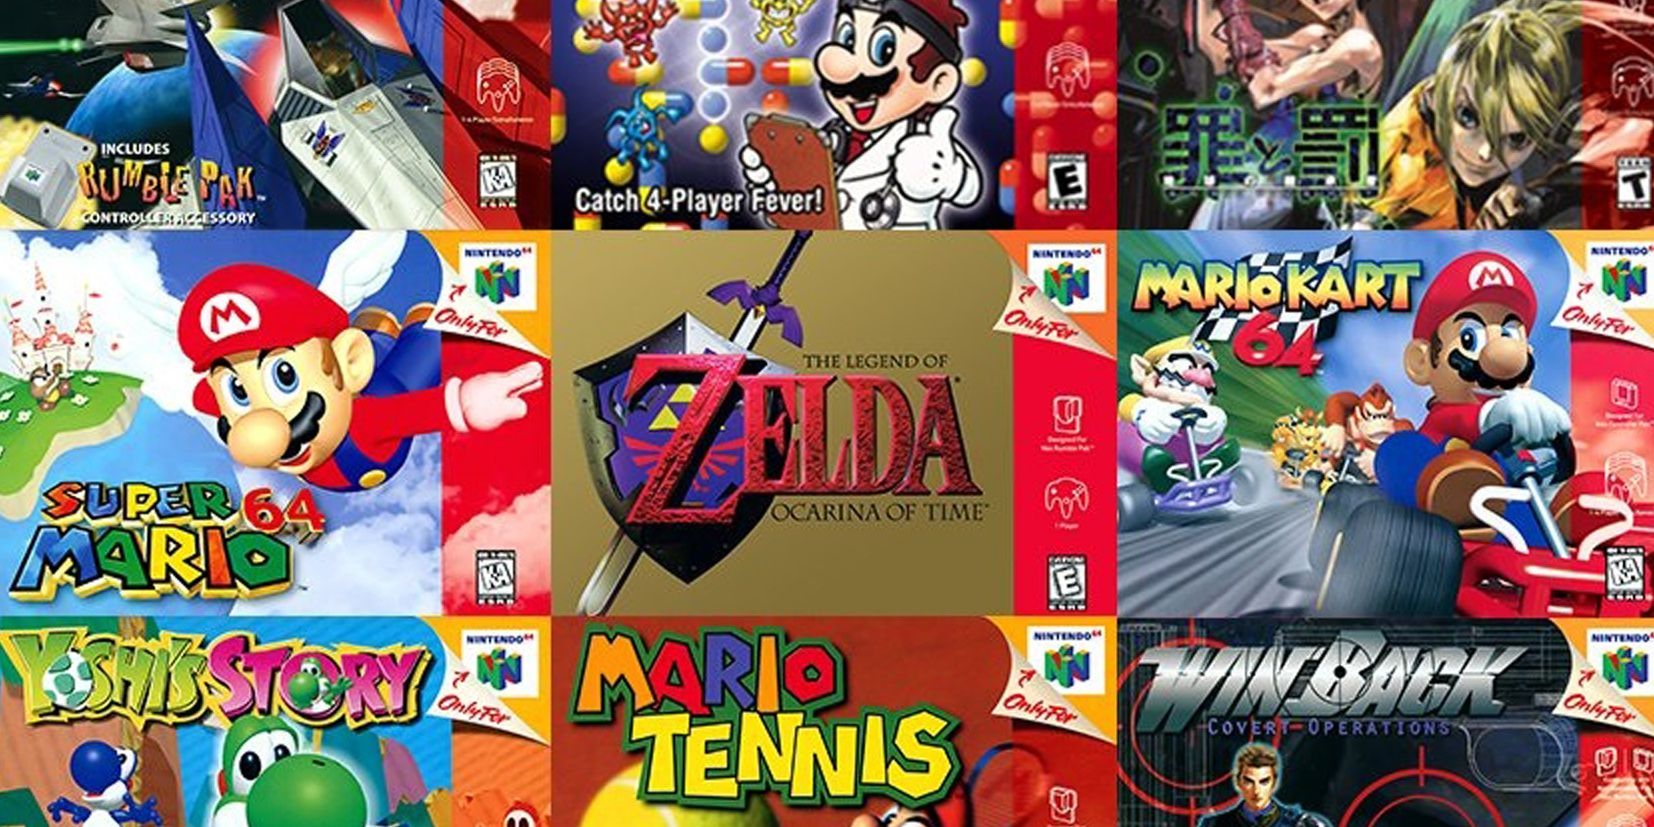 A selection of Nintendo 64 games